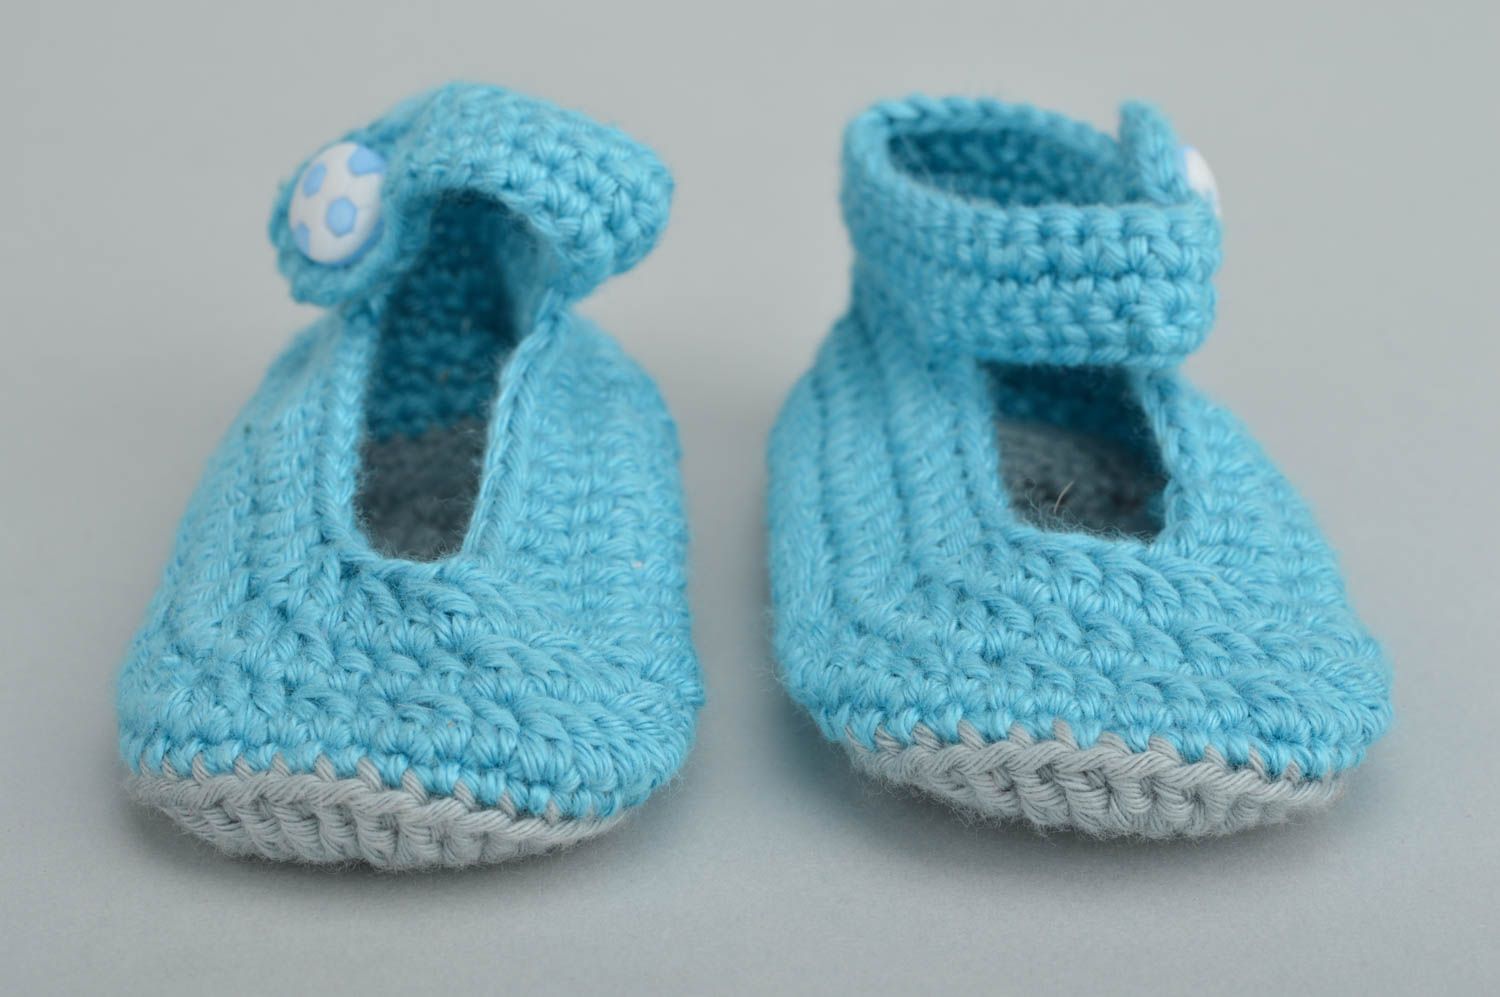 Chaussons pour bébé bleu ciel en coton naturel faits main originaux jolis photo 2